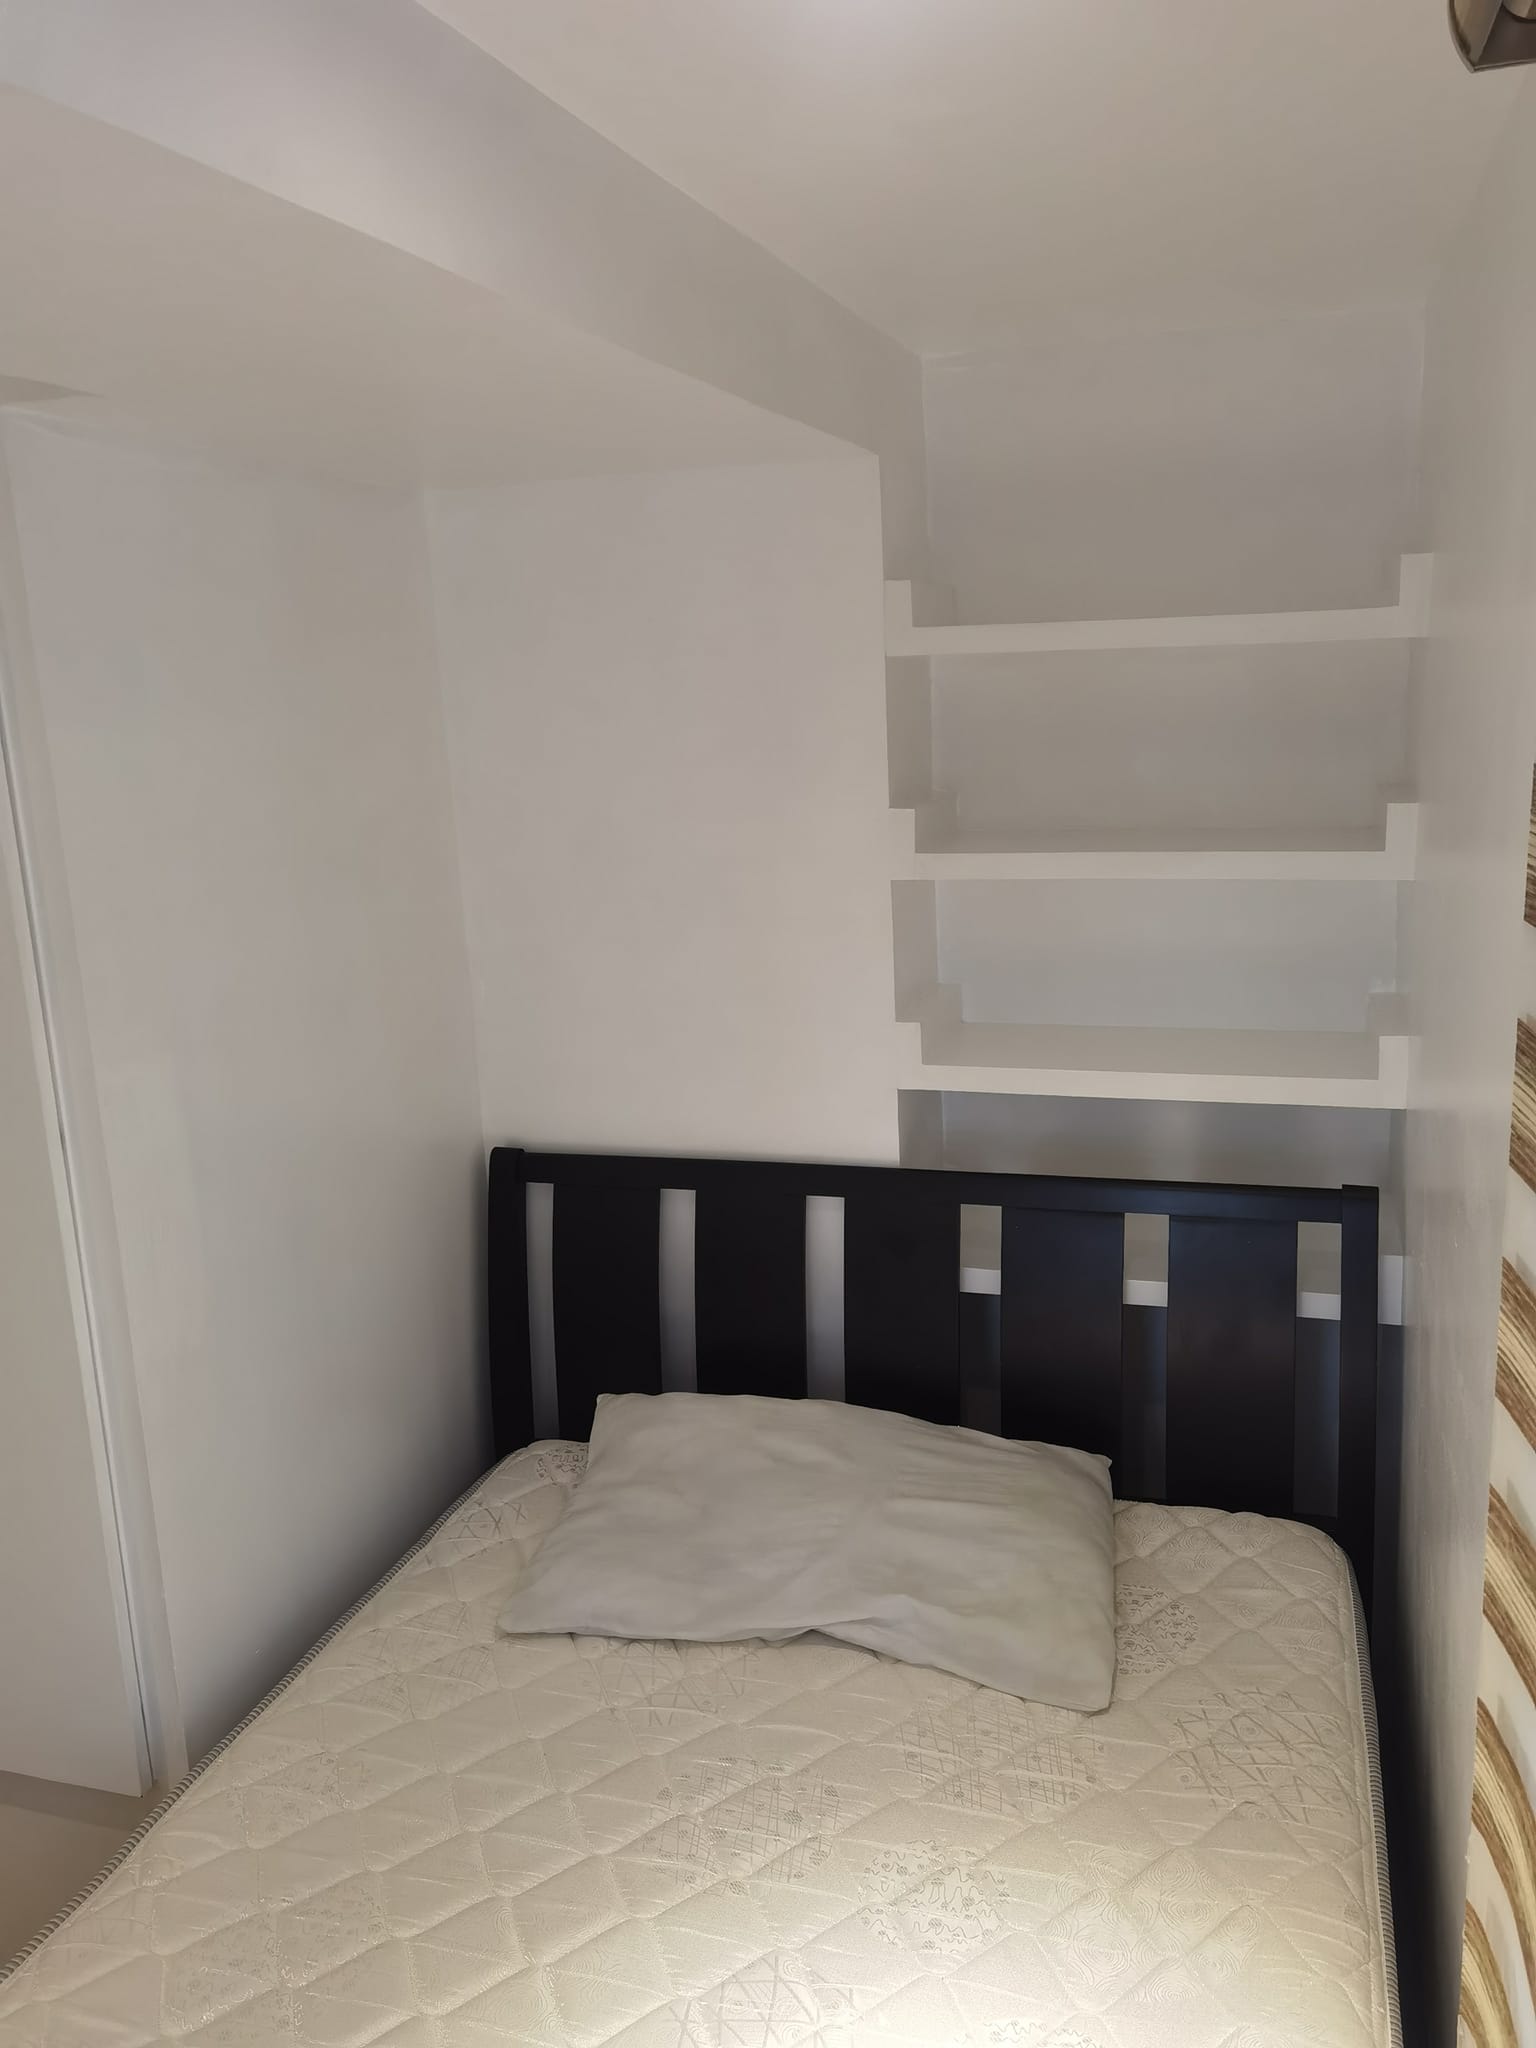 2 Bedroom Condominium Unit For Sale in Victoria de Makati